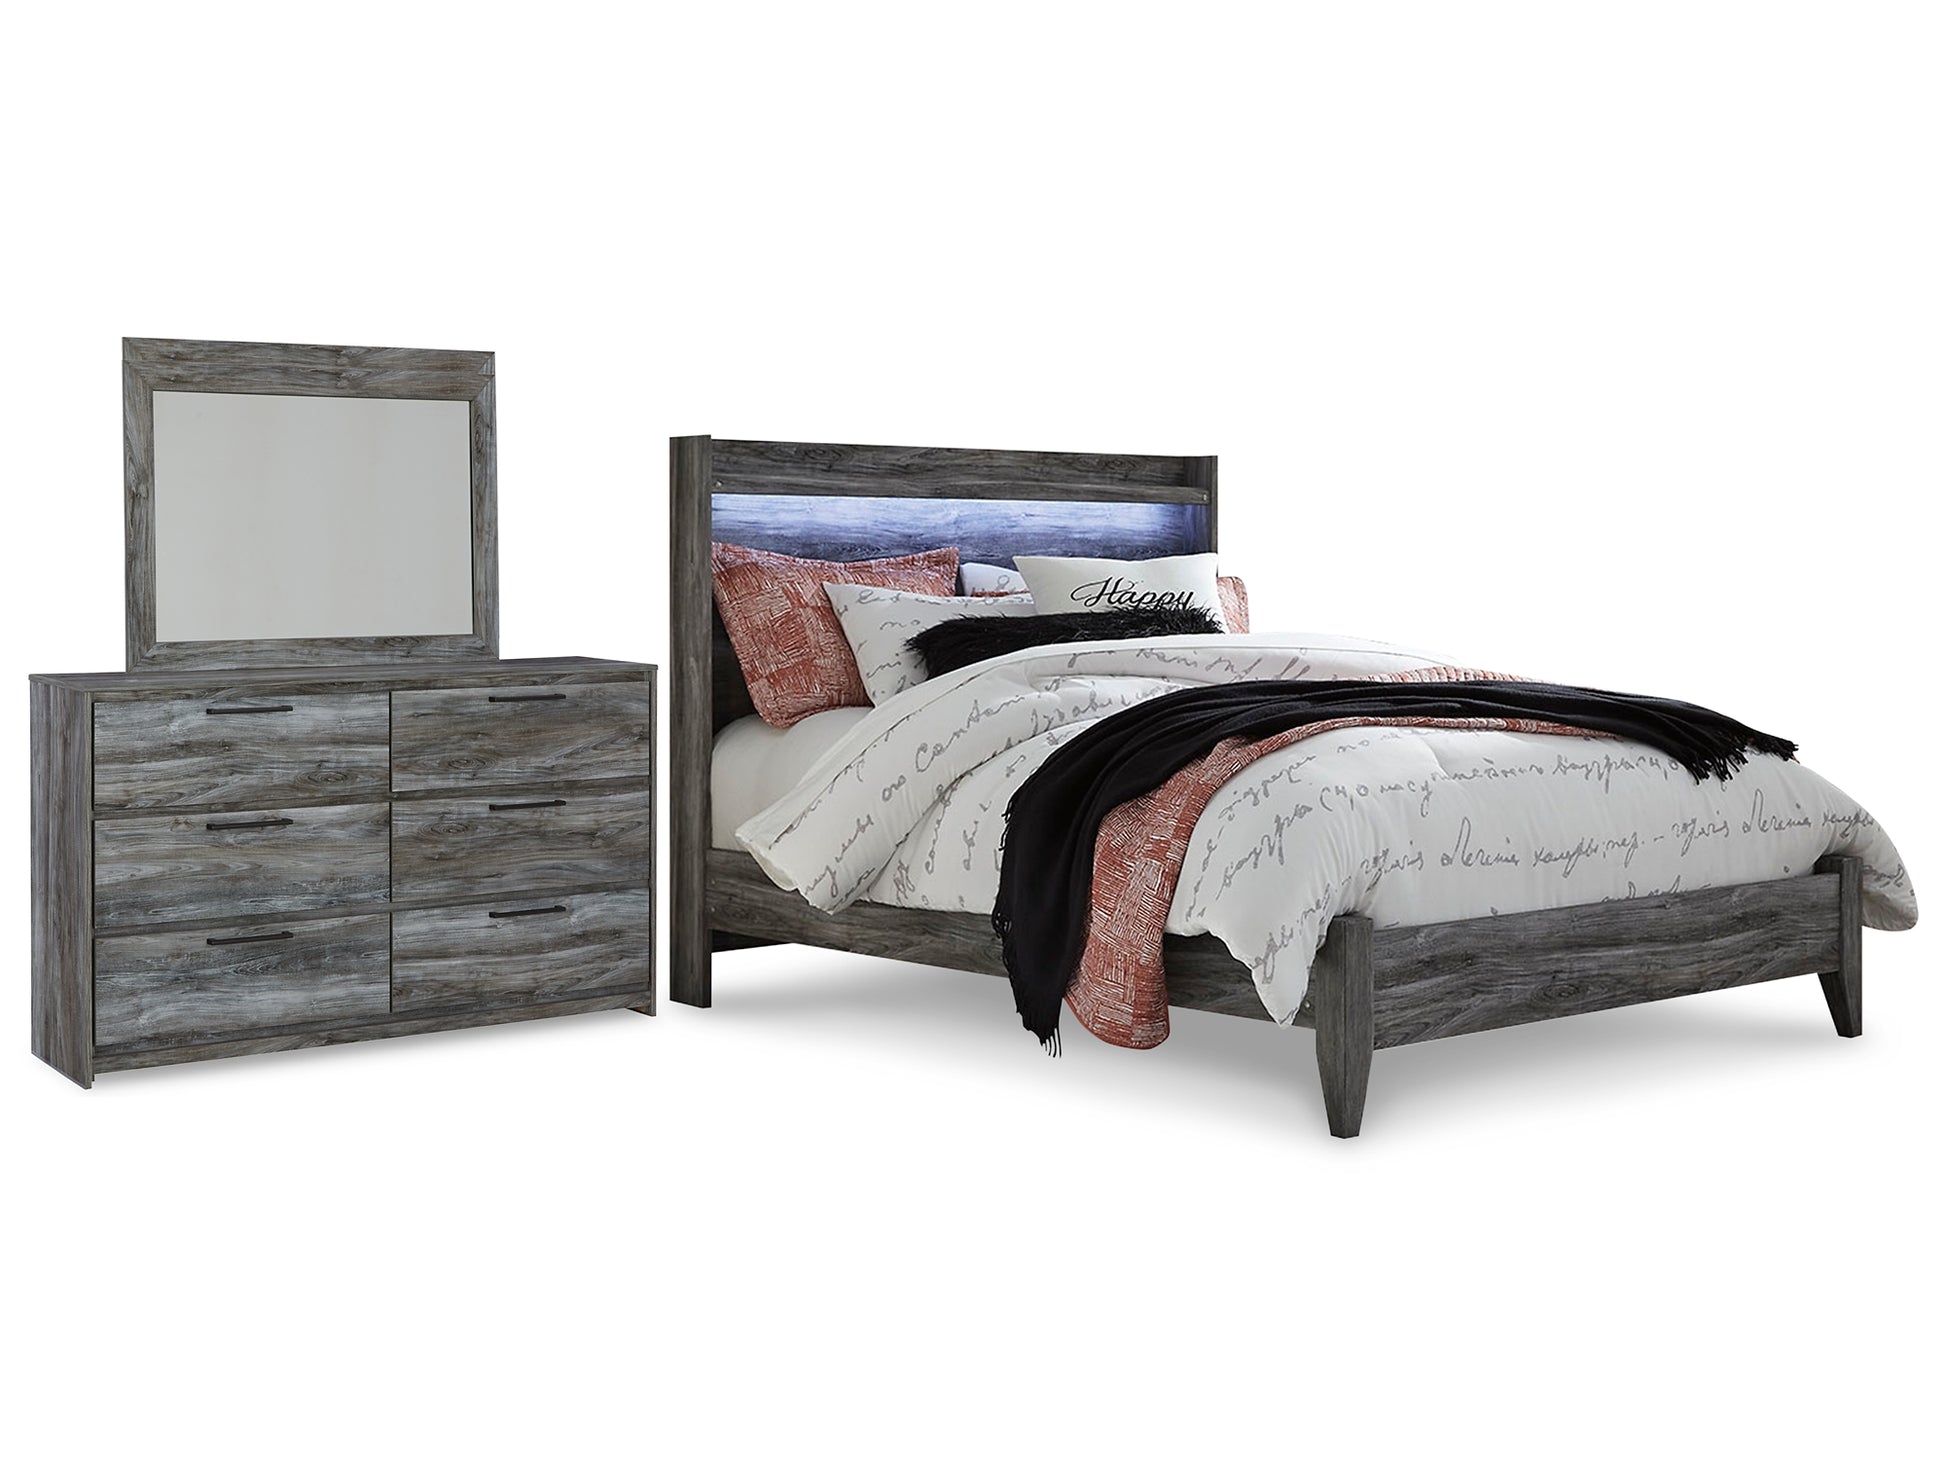 Baystorm Queen Panel Bed with Mirrored Dresser Wilson Furniture (OH)  in Bridgeport, Ohio. Serving Bridgeport, Yorkville, Bellaire, & Avondale